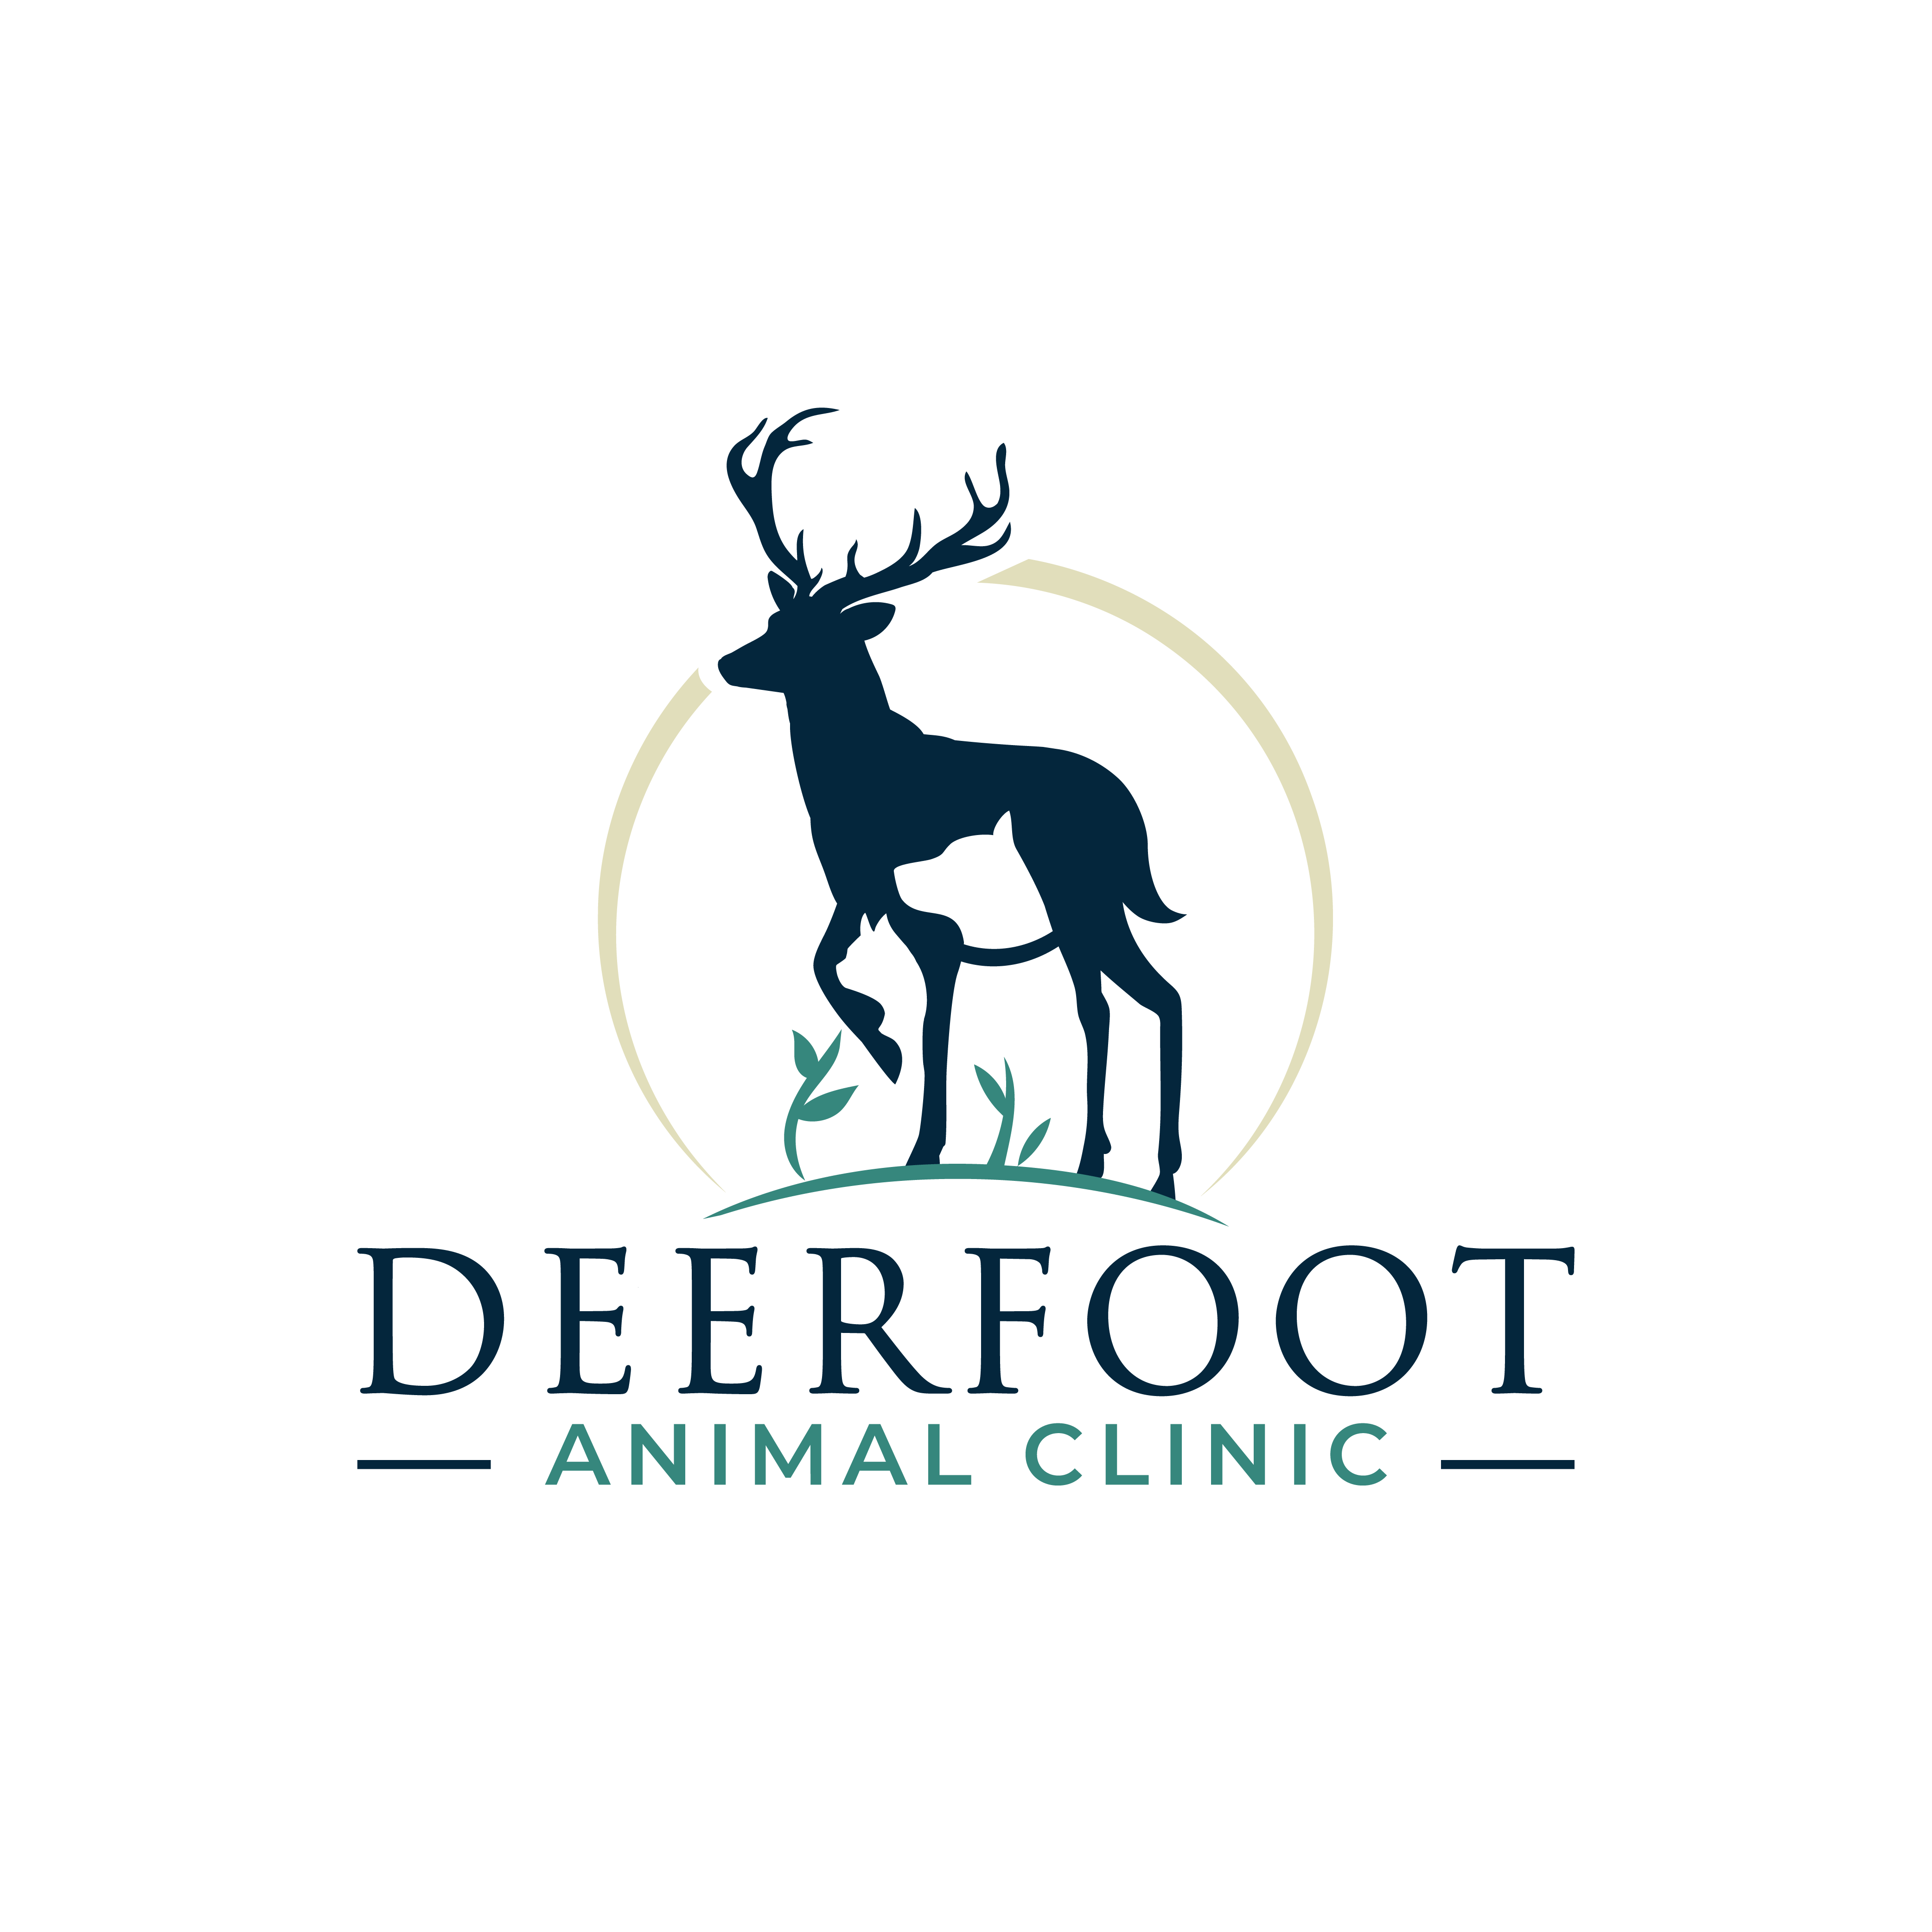 Deerfoot Animal Clinic